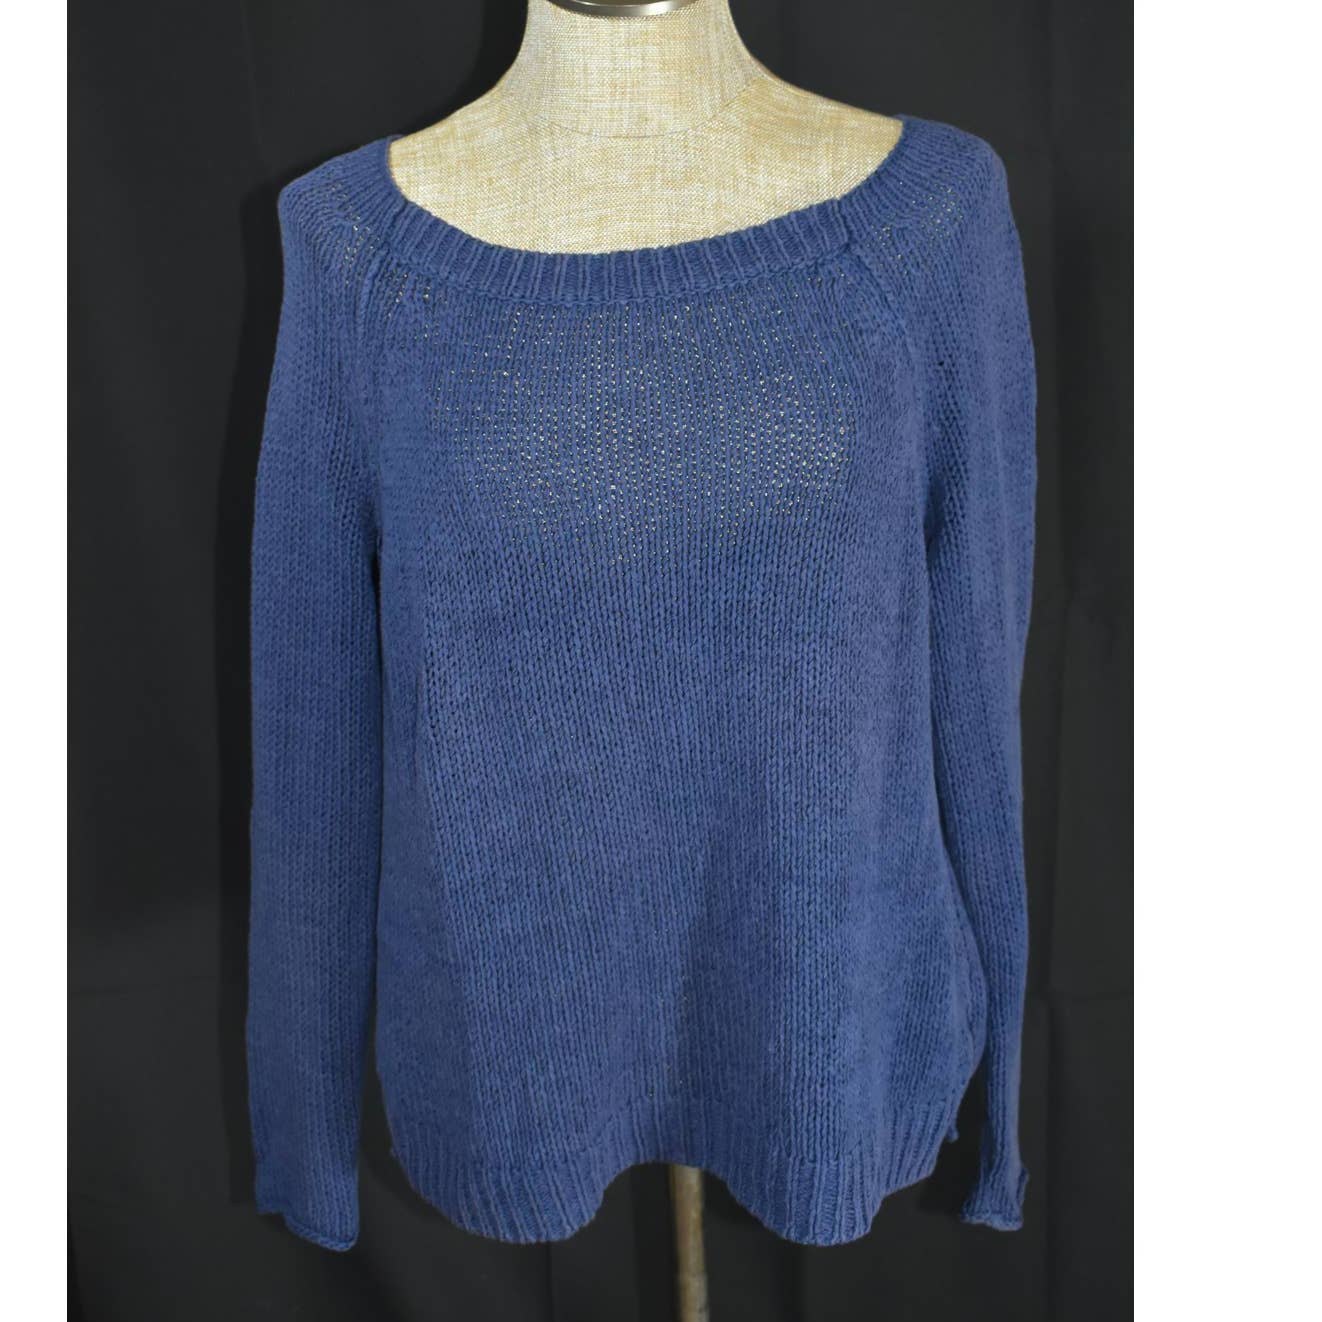 VInce Blue Cotton Knit Wide Neck Sweater - M